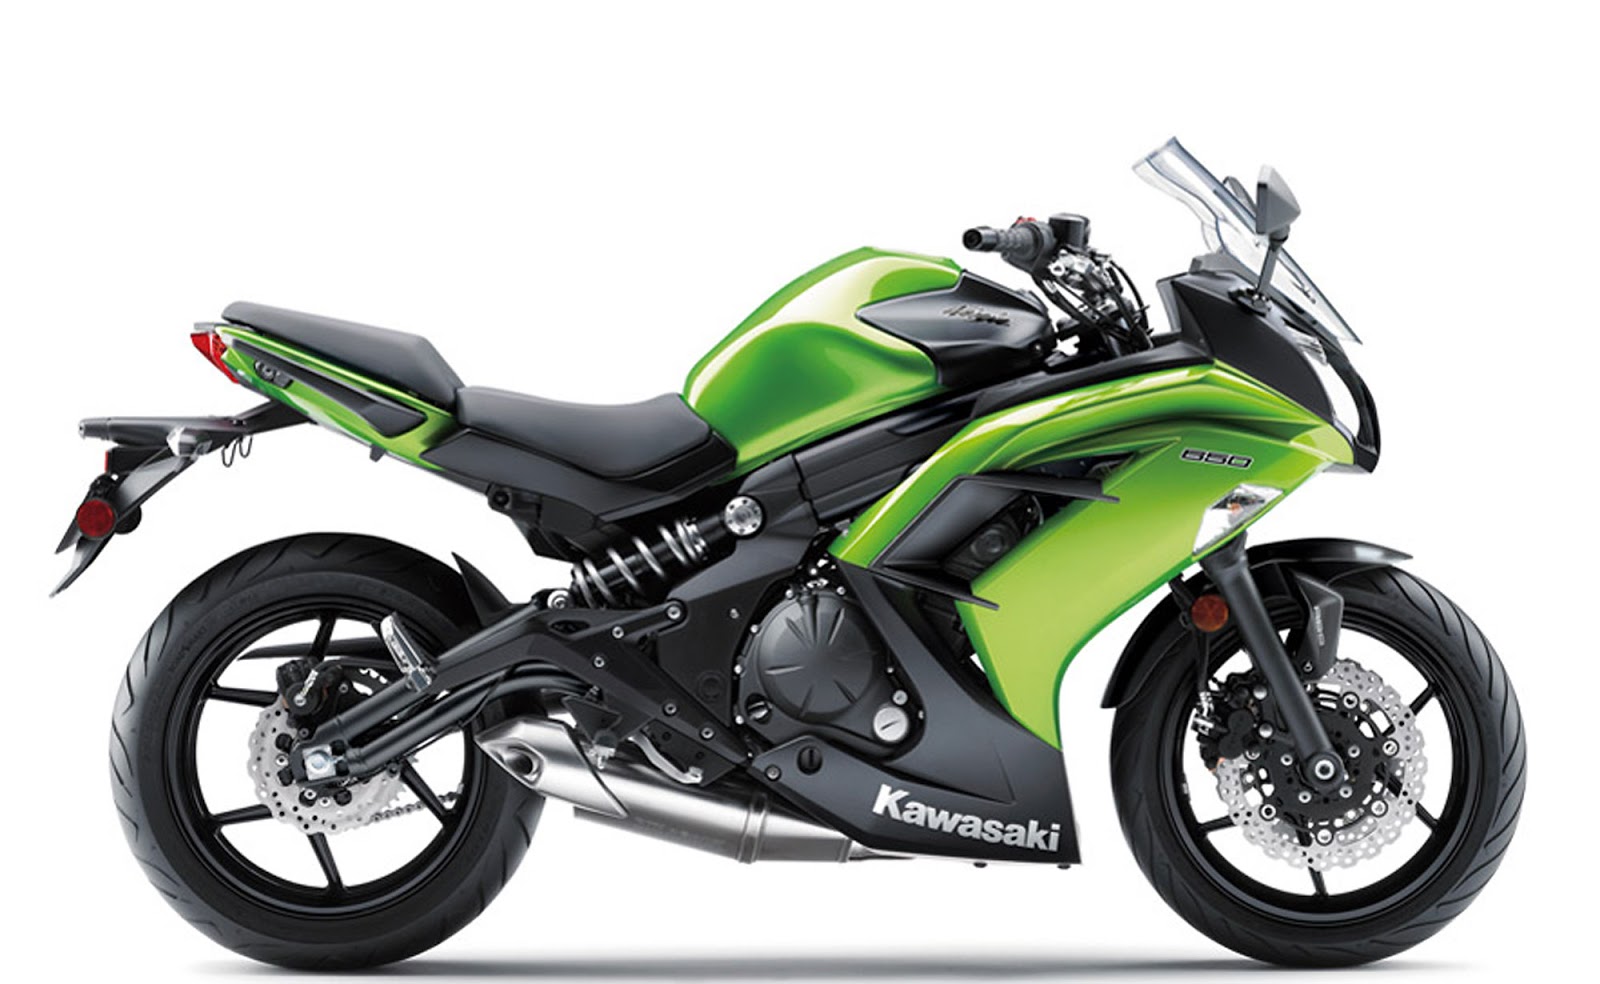 Ninja 650L (LAMS) KRT Edition - Peter Stevens Motorcycles